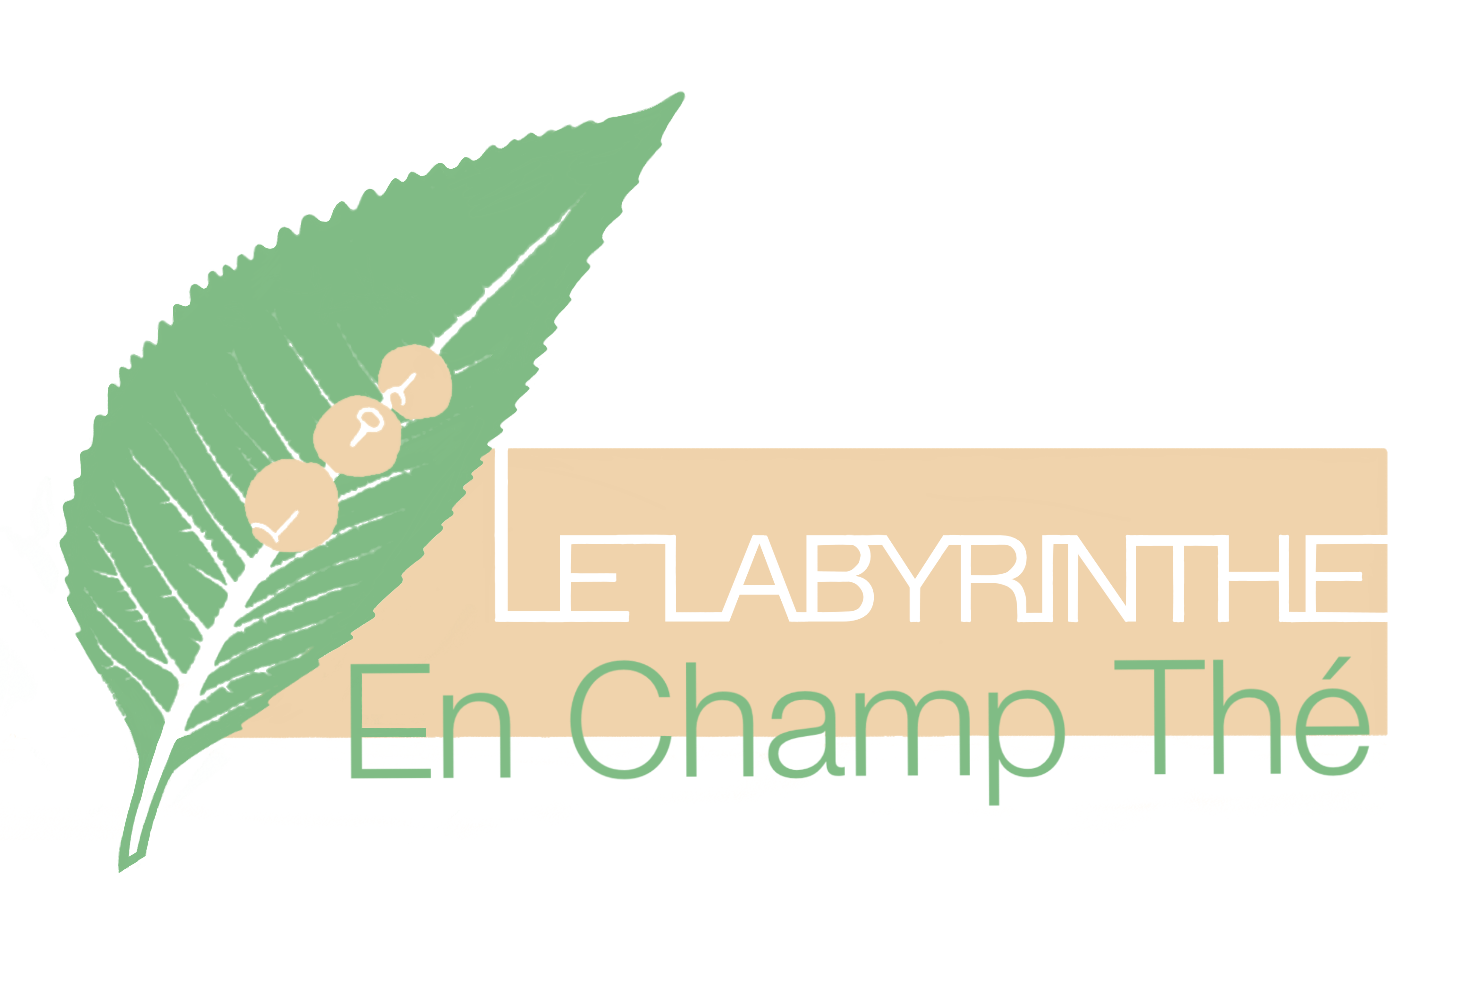 LE LABYRINTHE EN-CHAMP-THÉ